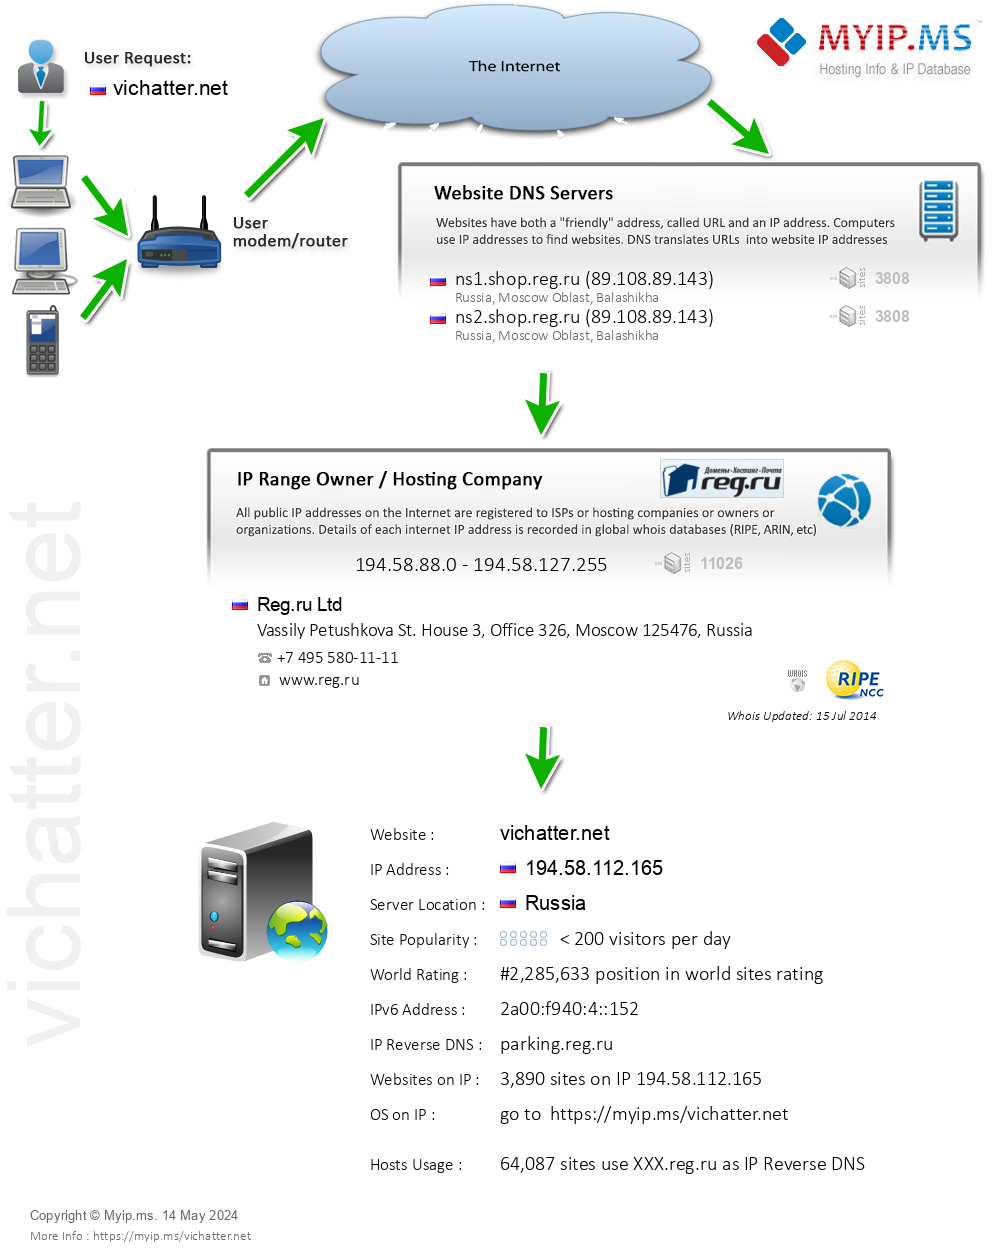 Vichatter.net - Website Hosting Visual IP Diagram